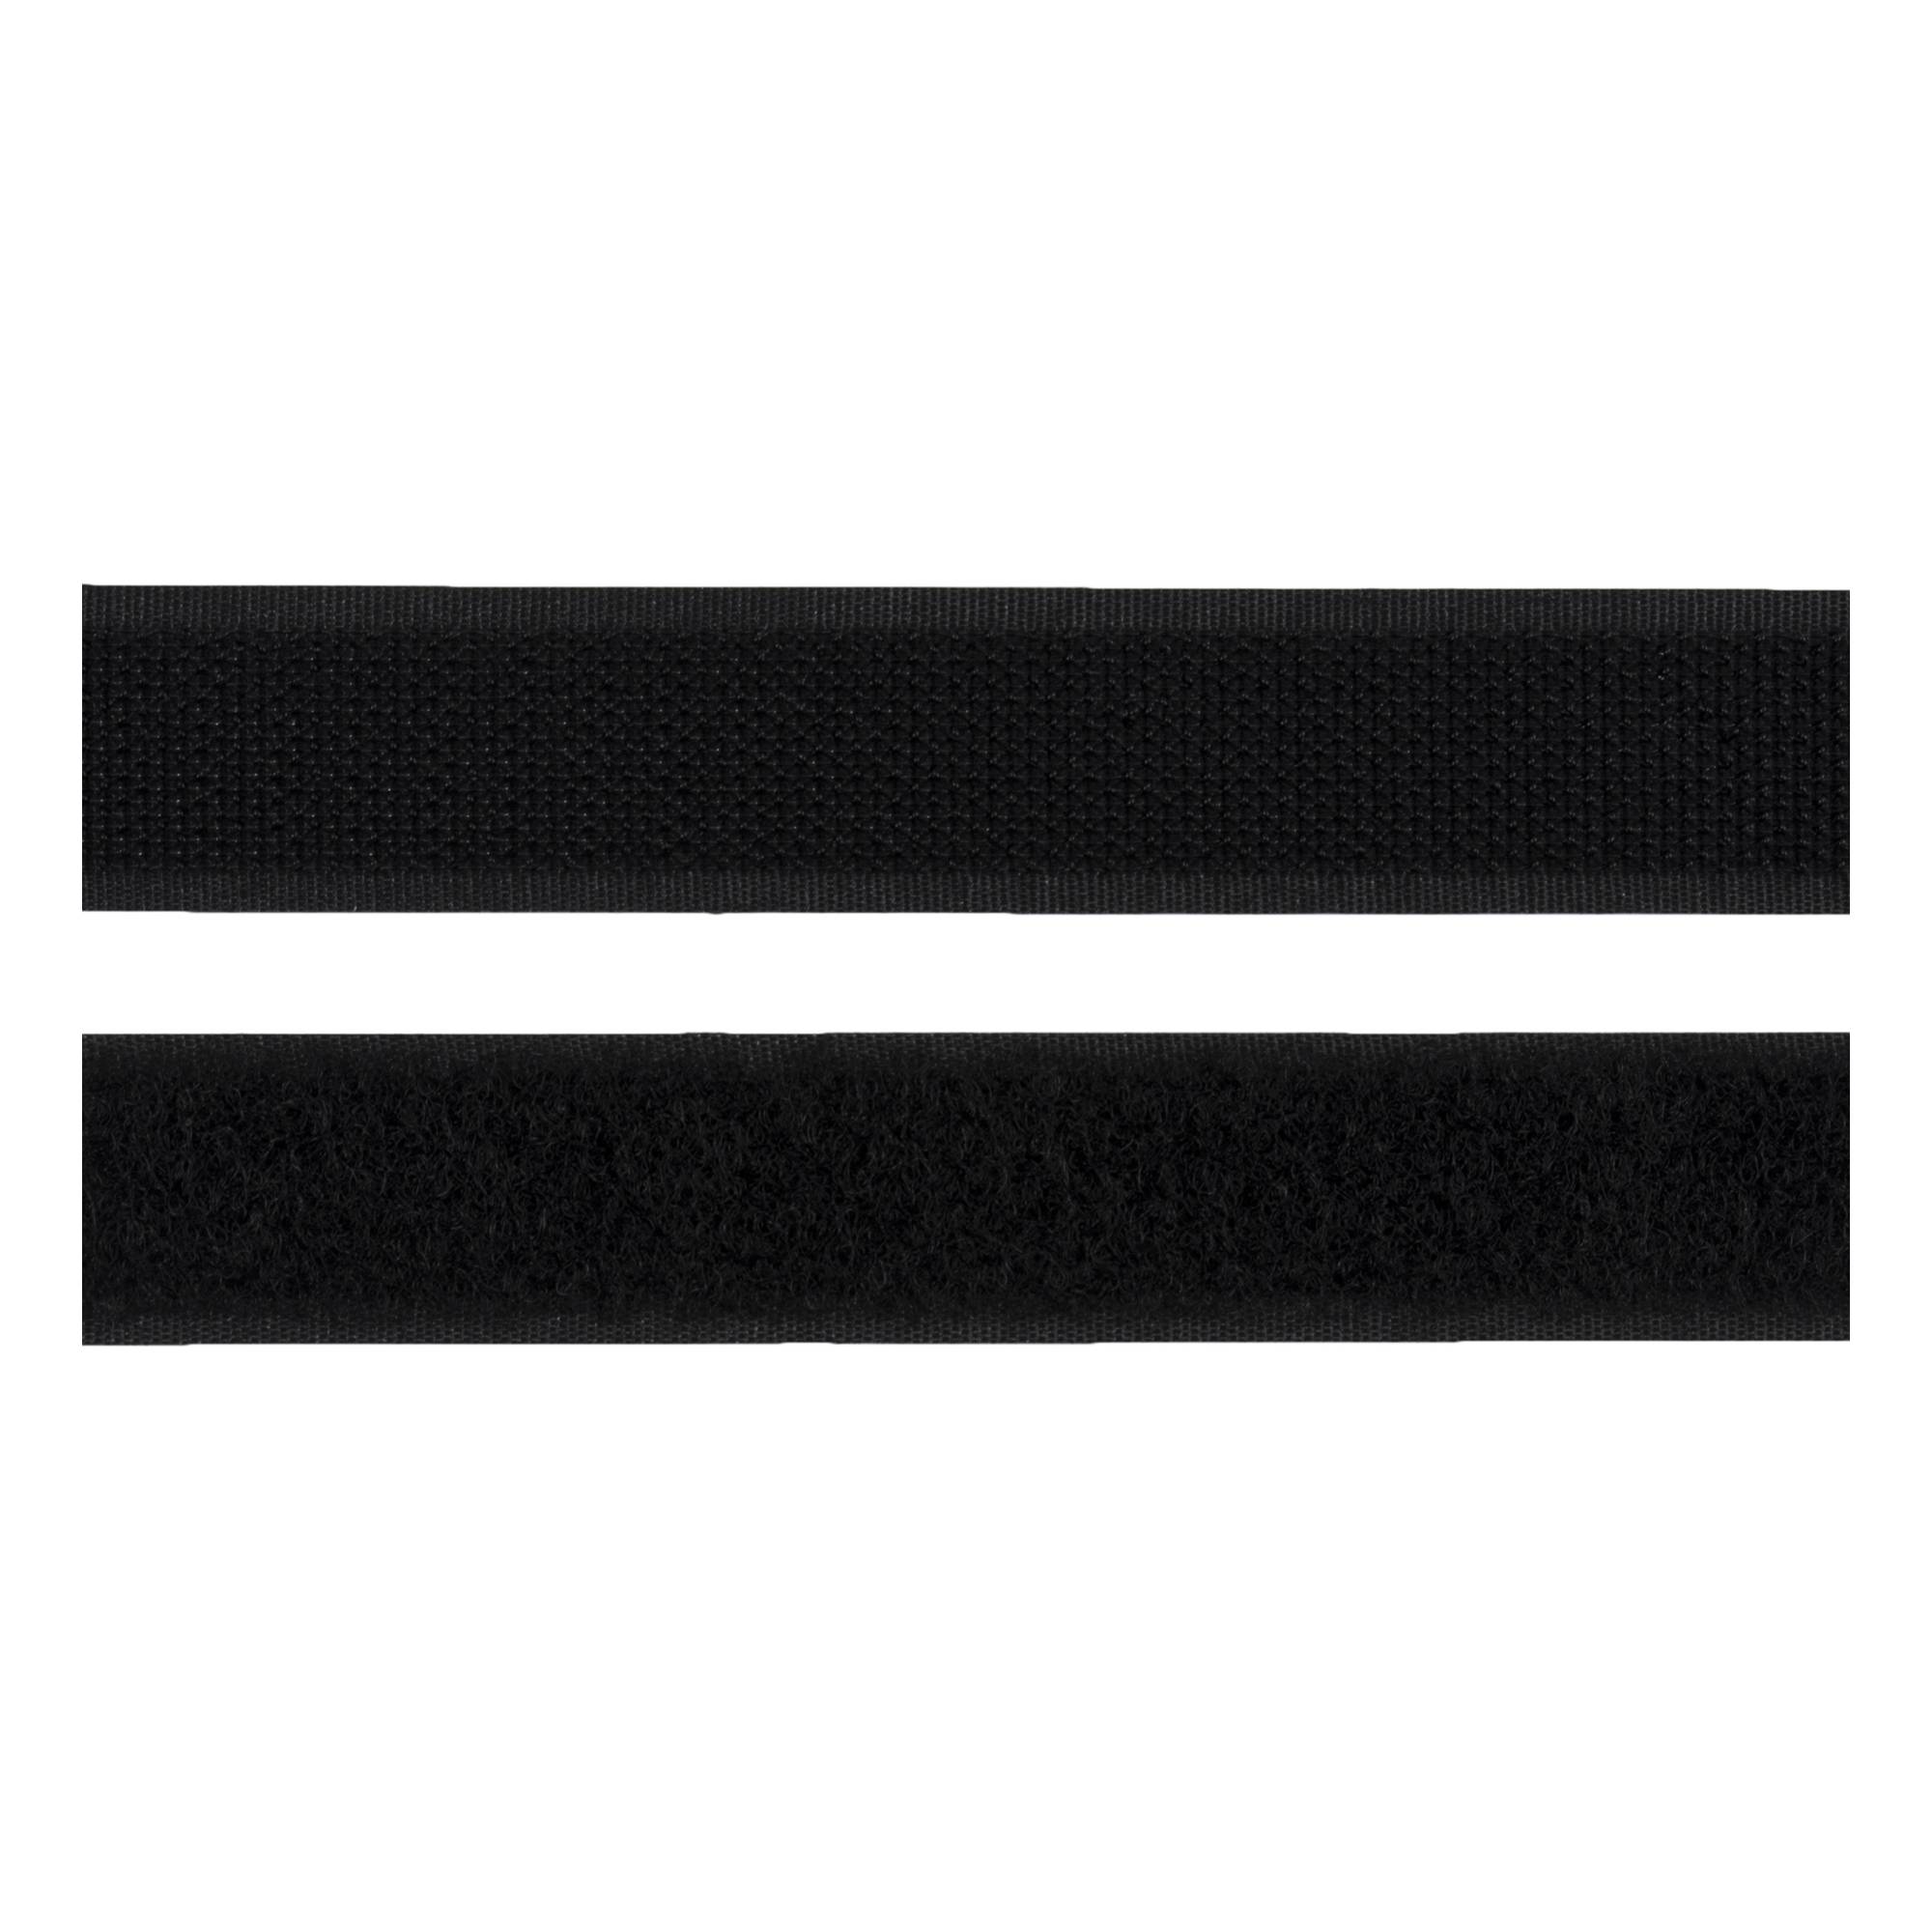 Milward Black 20mm Sew-On Hook and Loop Tape by the Metre